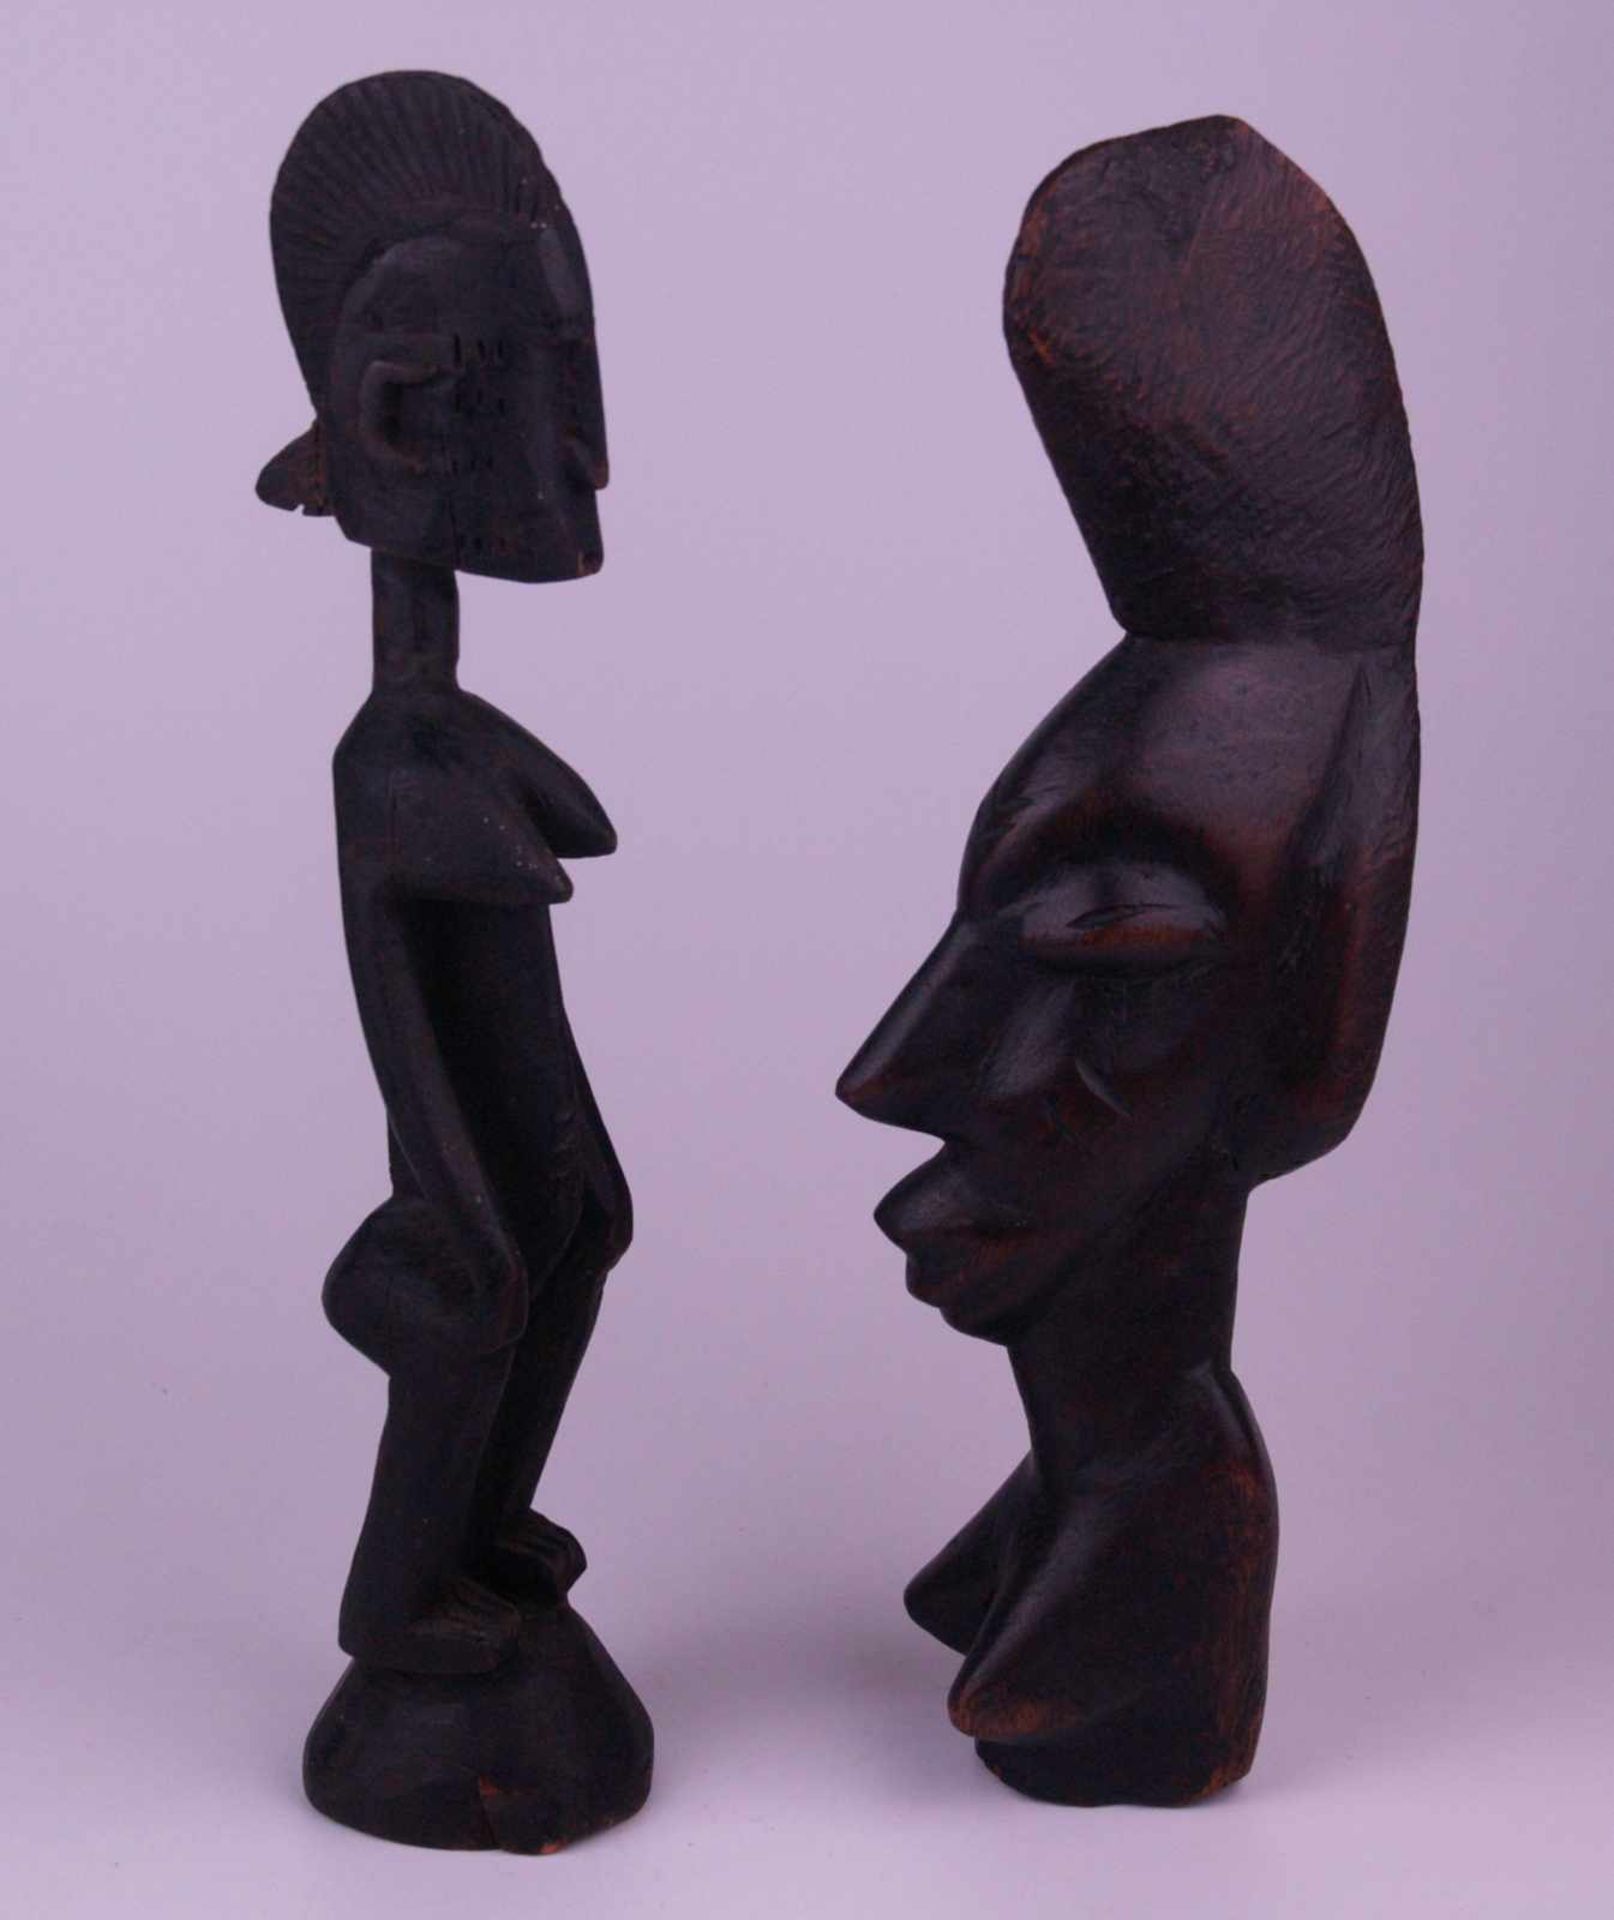 Zwei afrikanische Holzplastiken - Holz geschnitzt, dunkel braun, 1x Frauenbüste mit übernatürlich